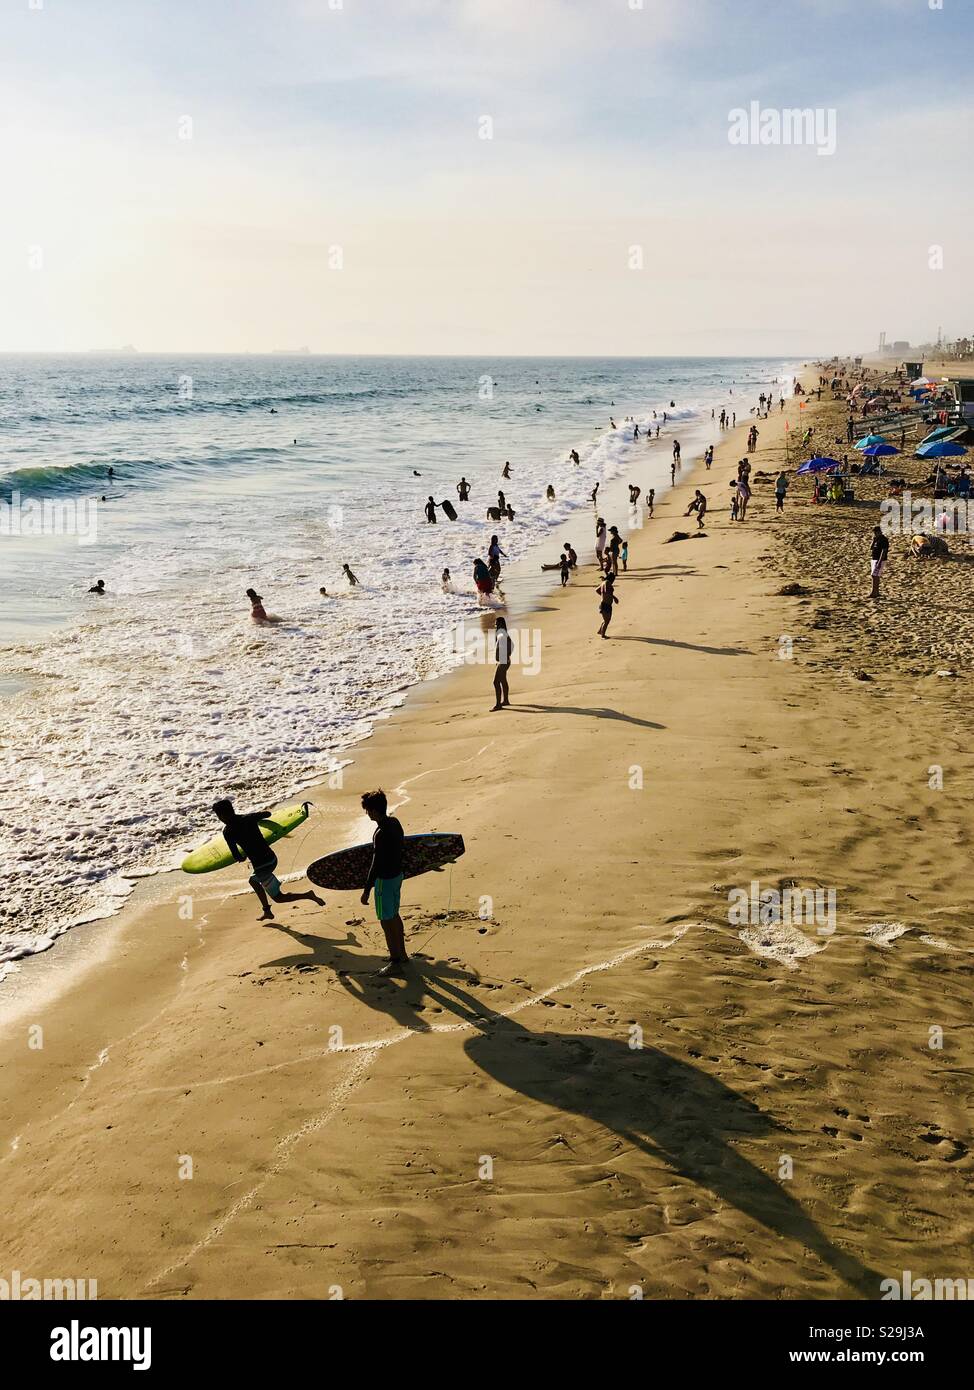 Frequentatori di spiaggia giocare in acqua durante una calda giornata estiva. Manhattan Beach, California USA. Foto Stock